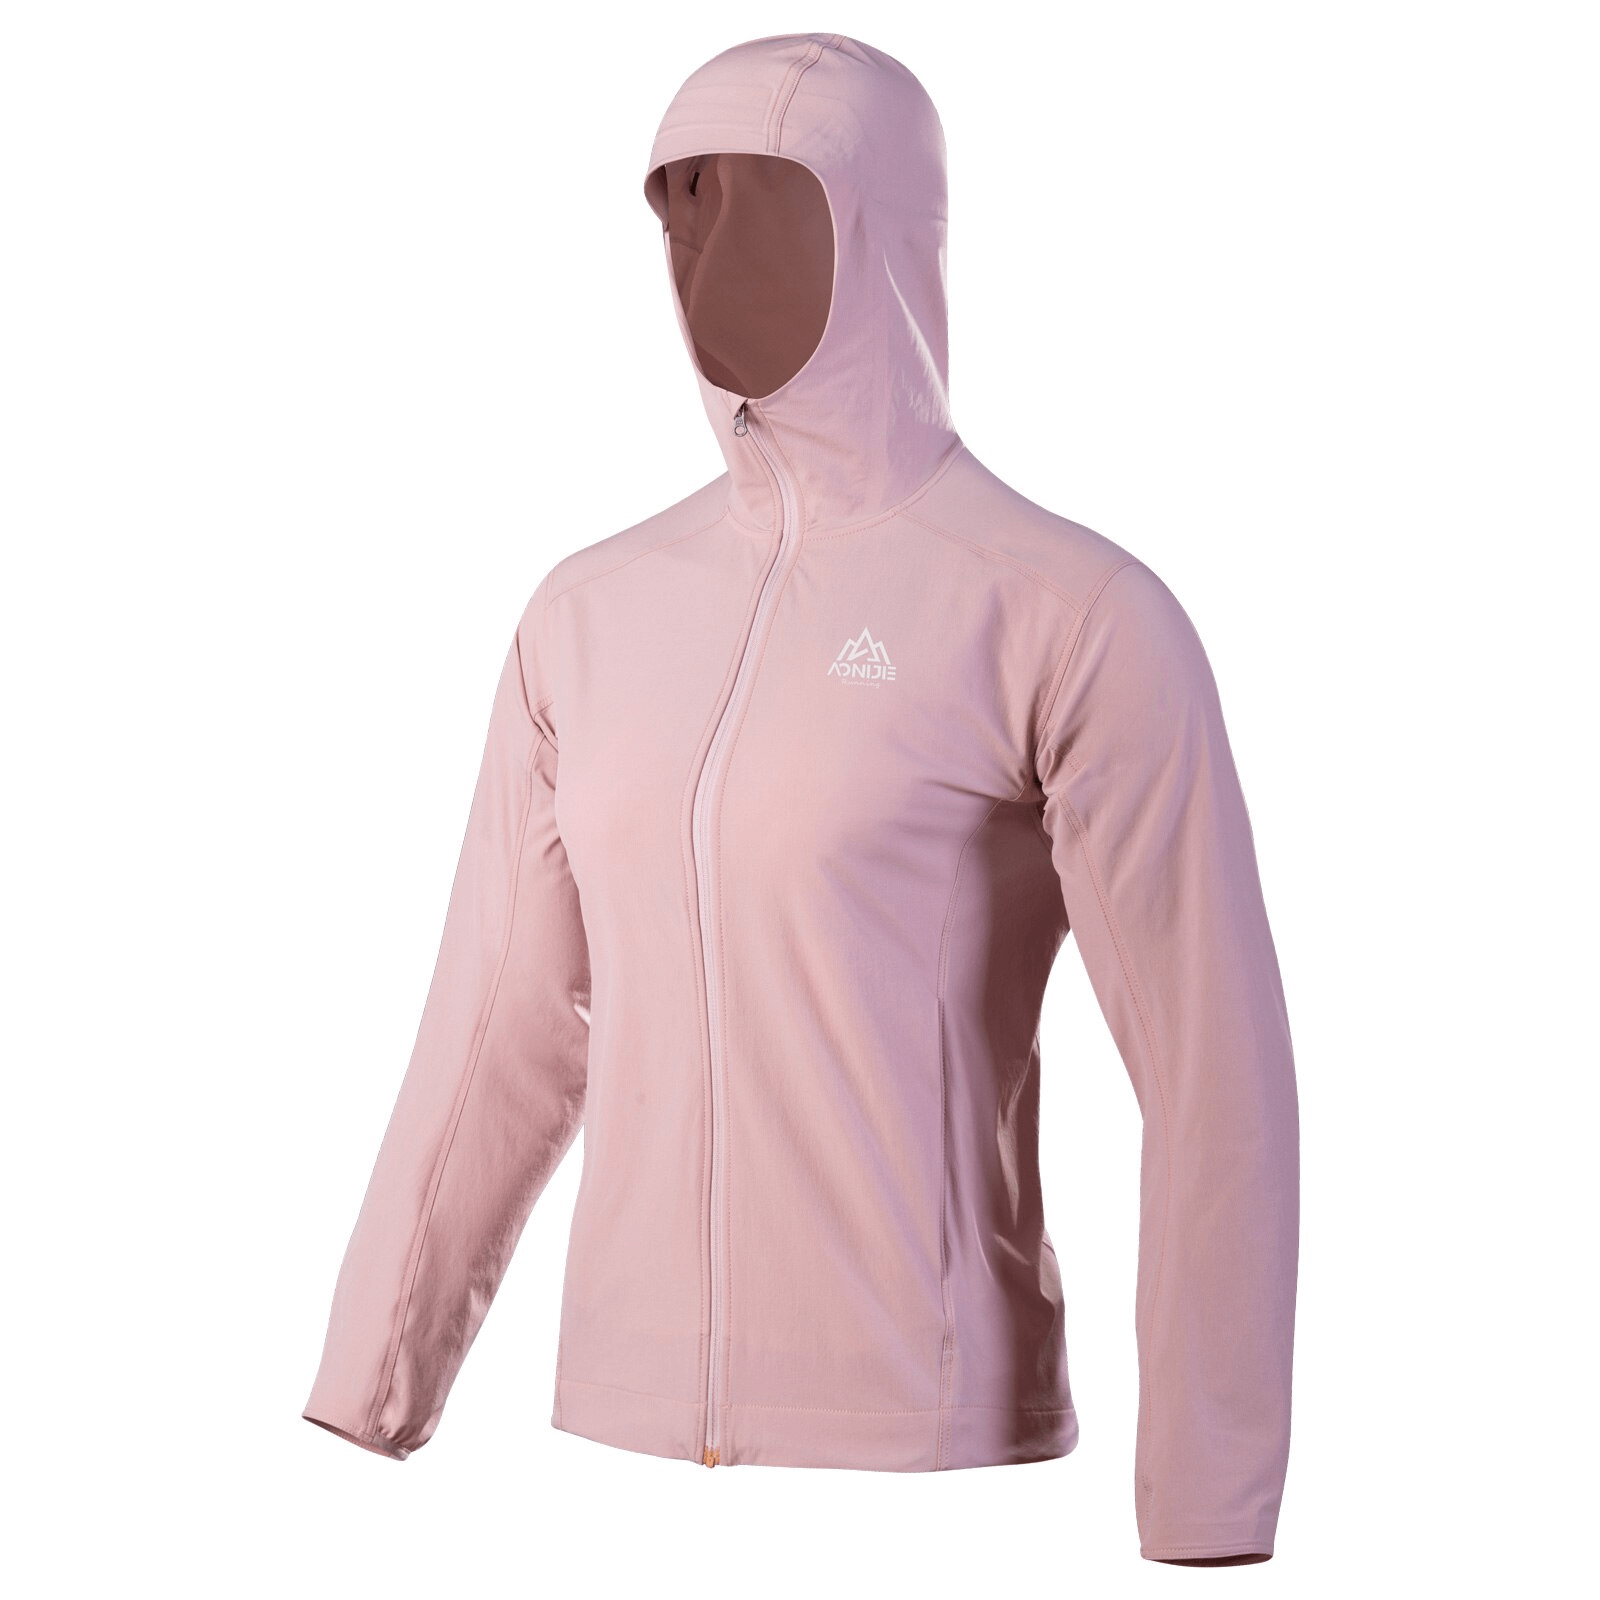 Veste de sport fine imperméable pour femme avec capuche sur fermeture éclair - SPF0897 